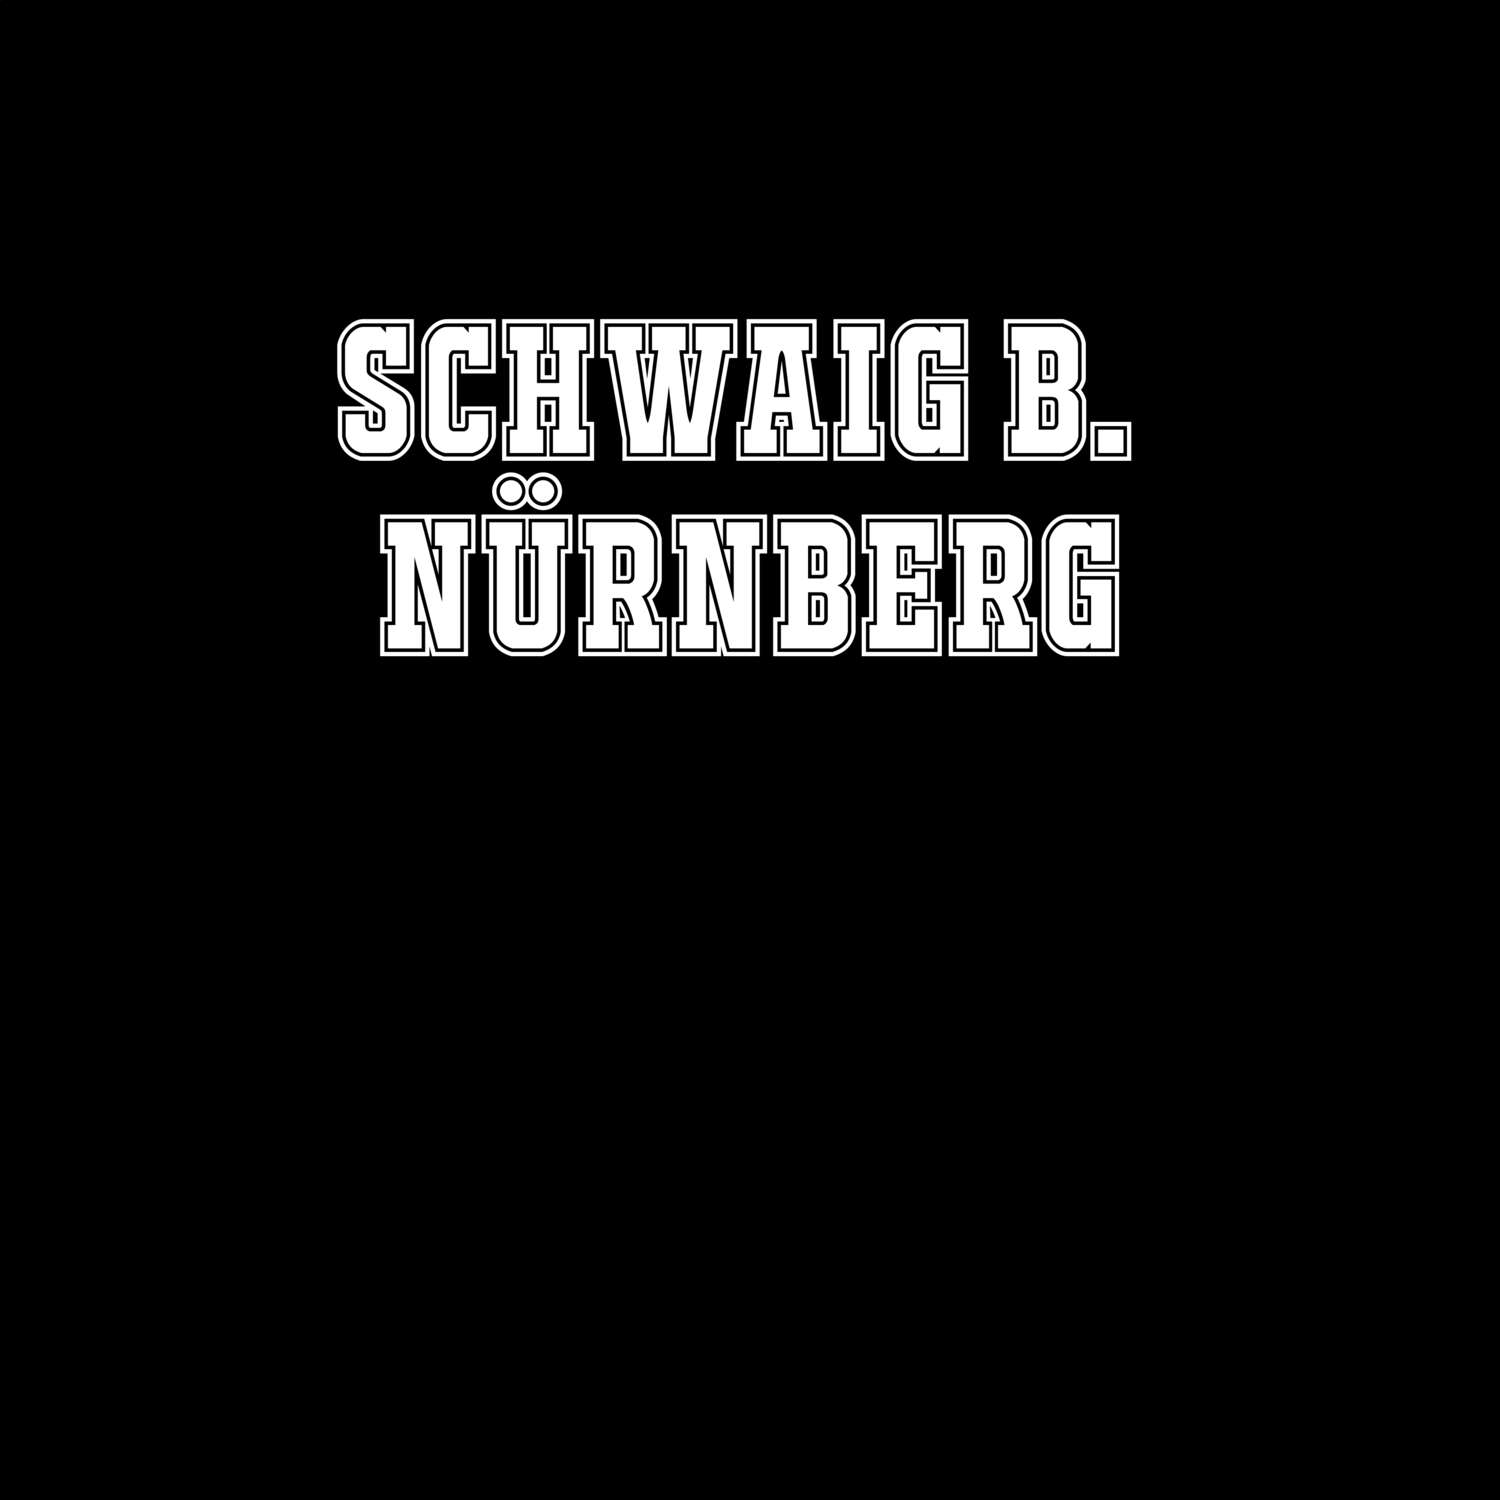 Schwaig b. Nürnberg T-Shirt »Classic«